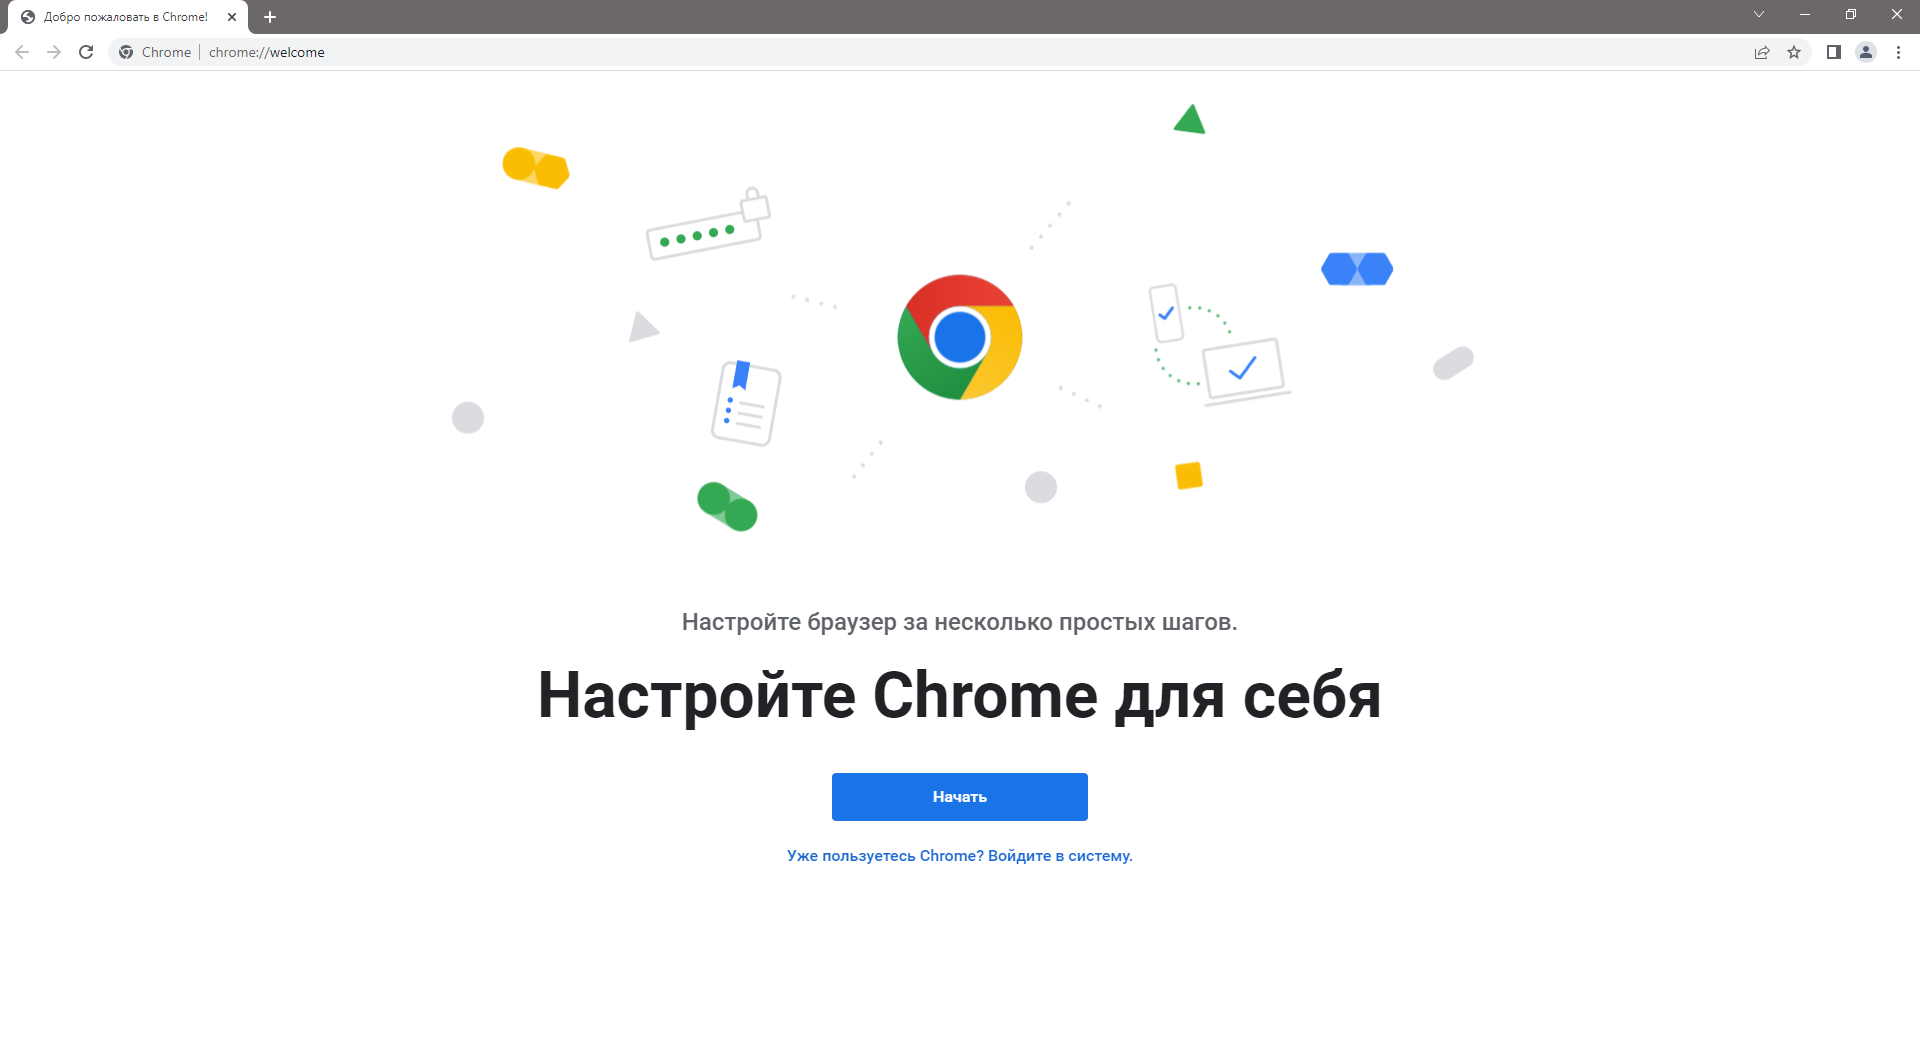 Google Chrome 104.0.5112.81 Portable by Cento8 [Ru/En]